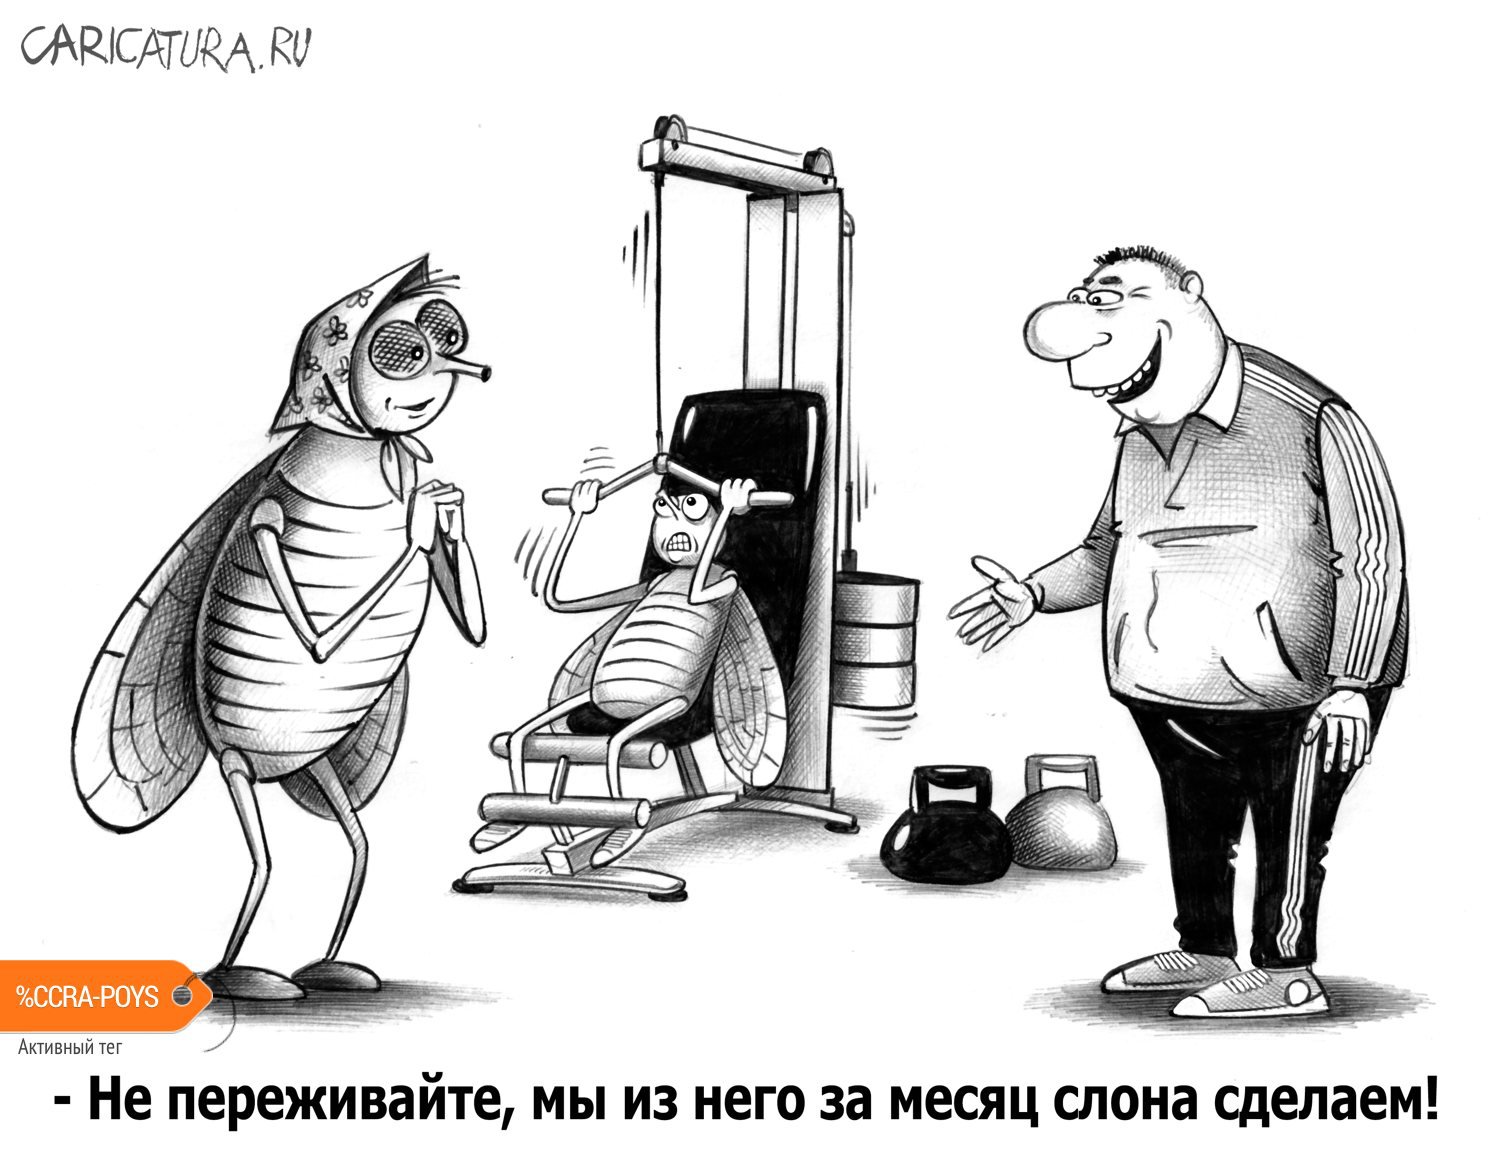 Карикатура "Из мухи слона", Сергей Корсун